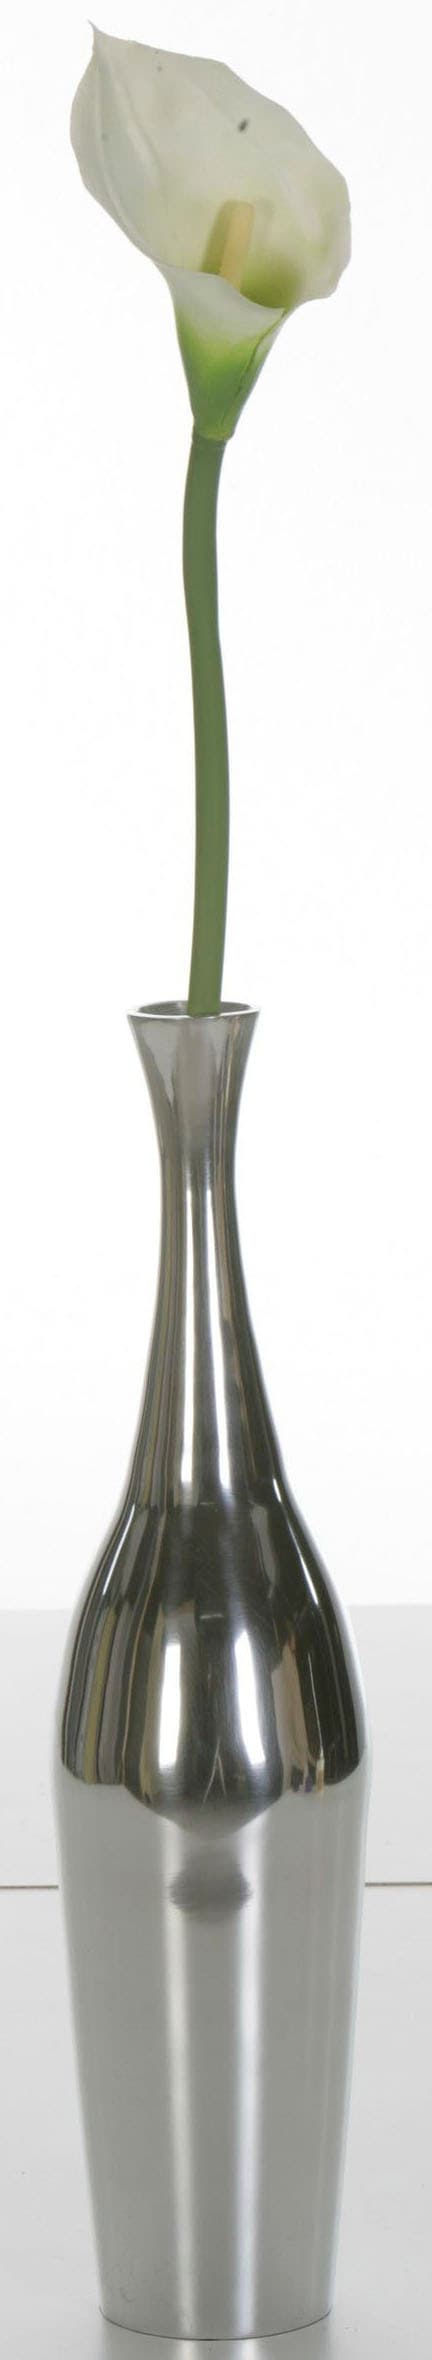 ARTRA Dekovase »Aluminiumvase 'Bottle' M - Hoch, Dekoration« günstig kaufen